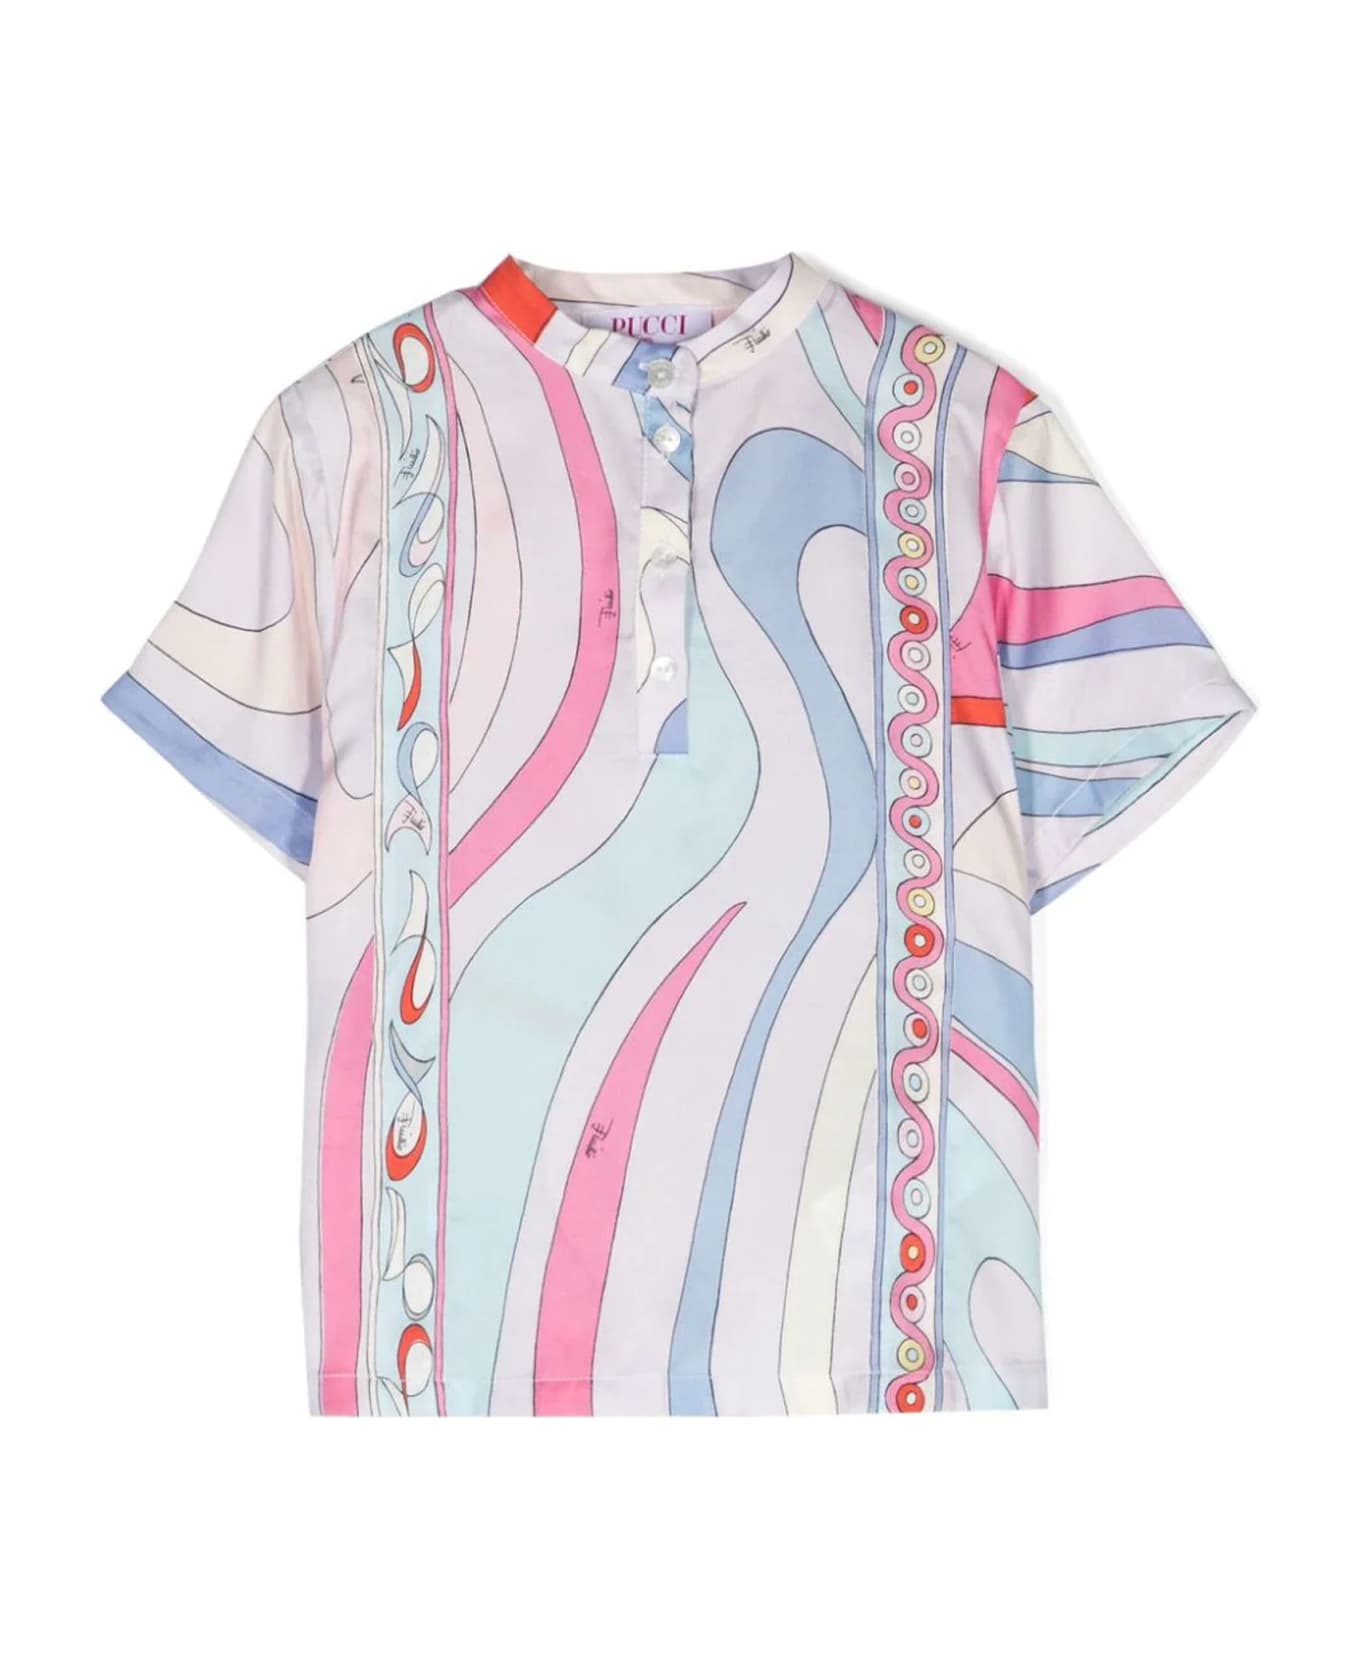 Pucci Emilio Pucci Shirts Multicolour - MultiColour シャツ